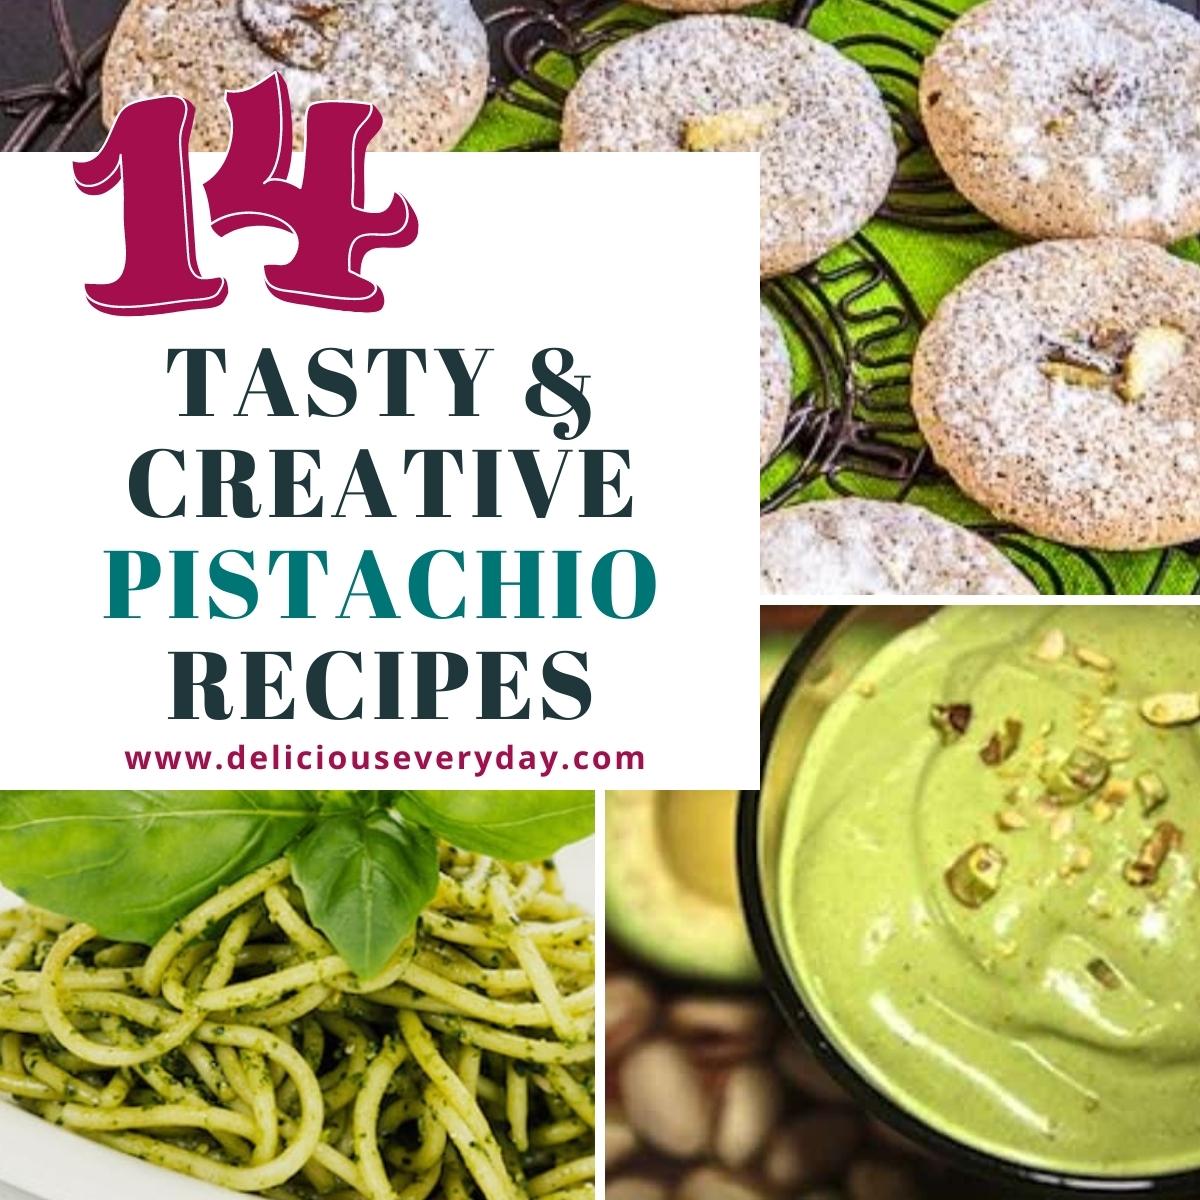 recipes that feature pistachios